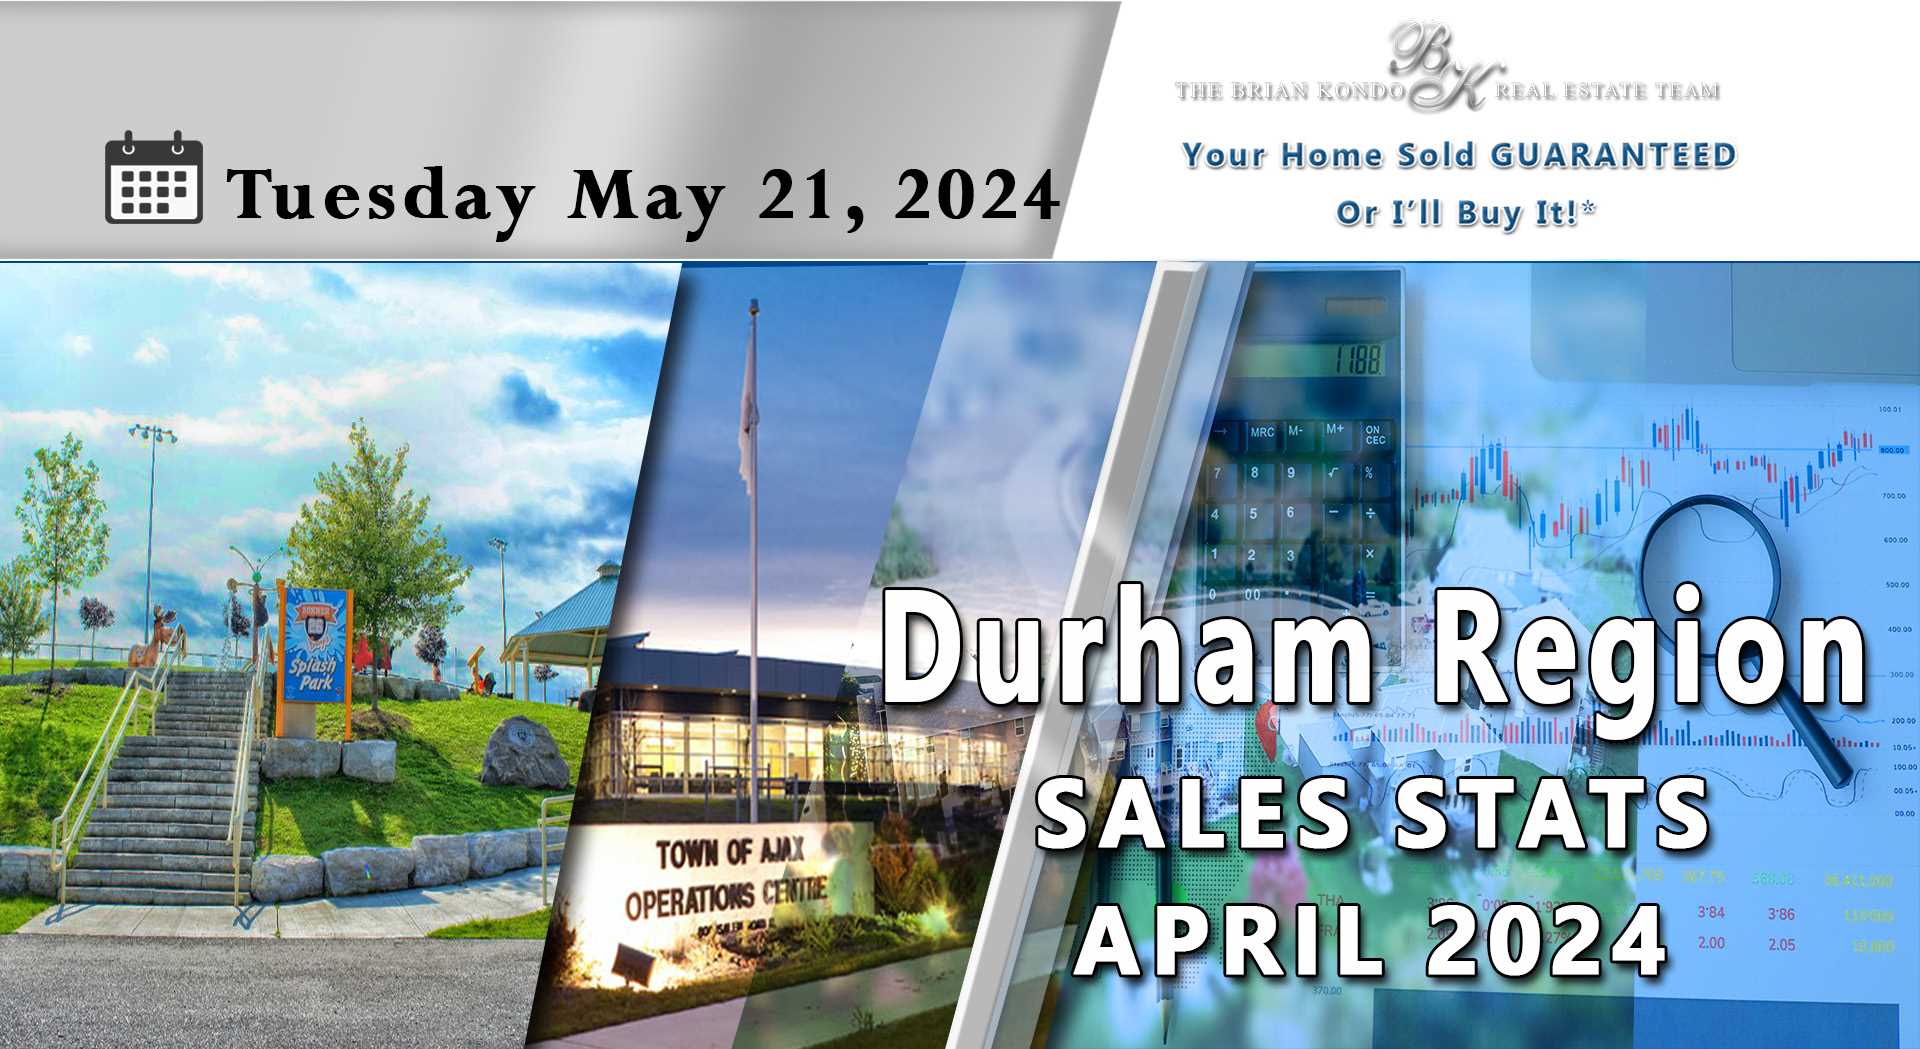 DURHAM REGION SALES STATS APRIL 2024